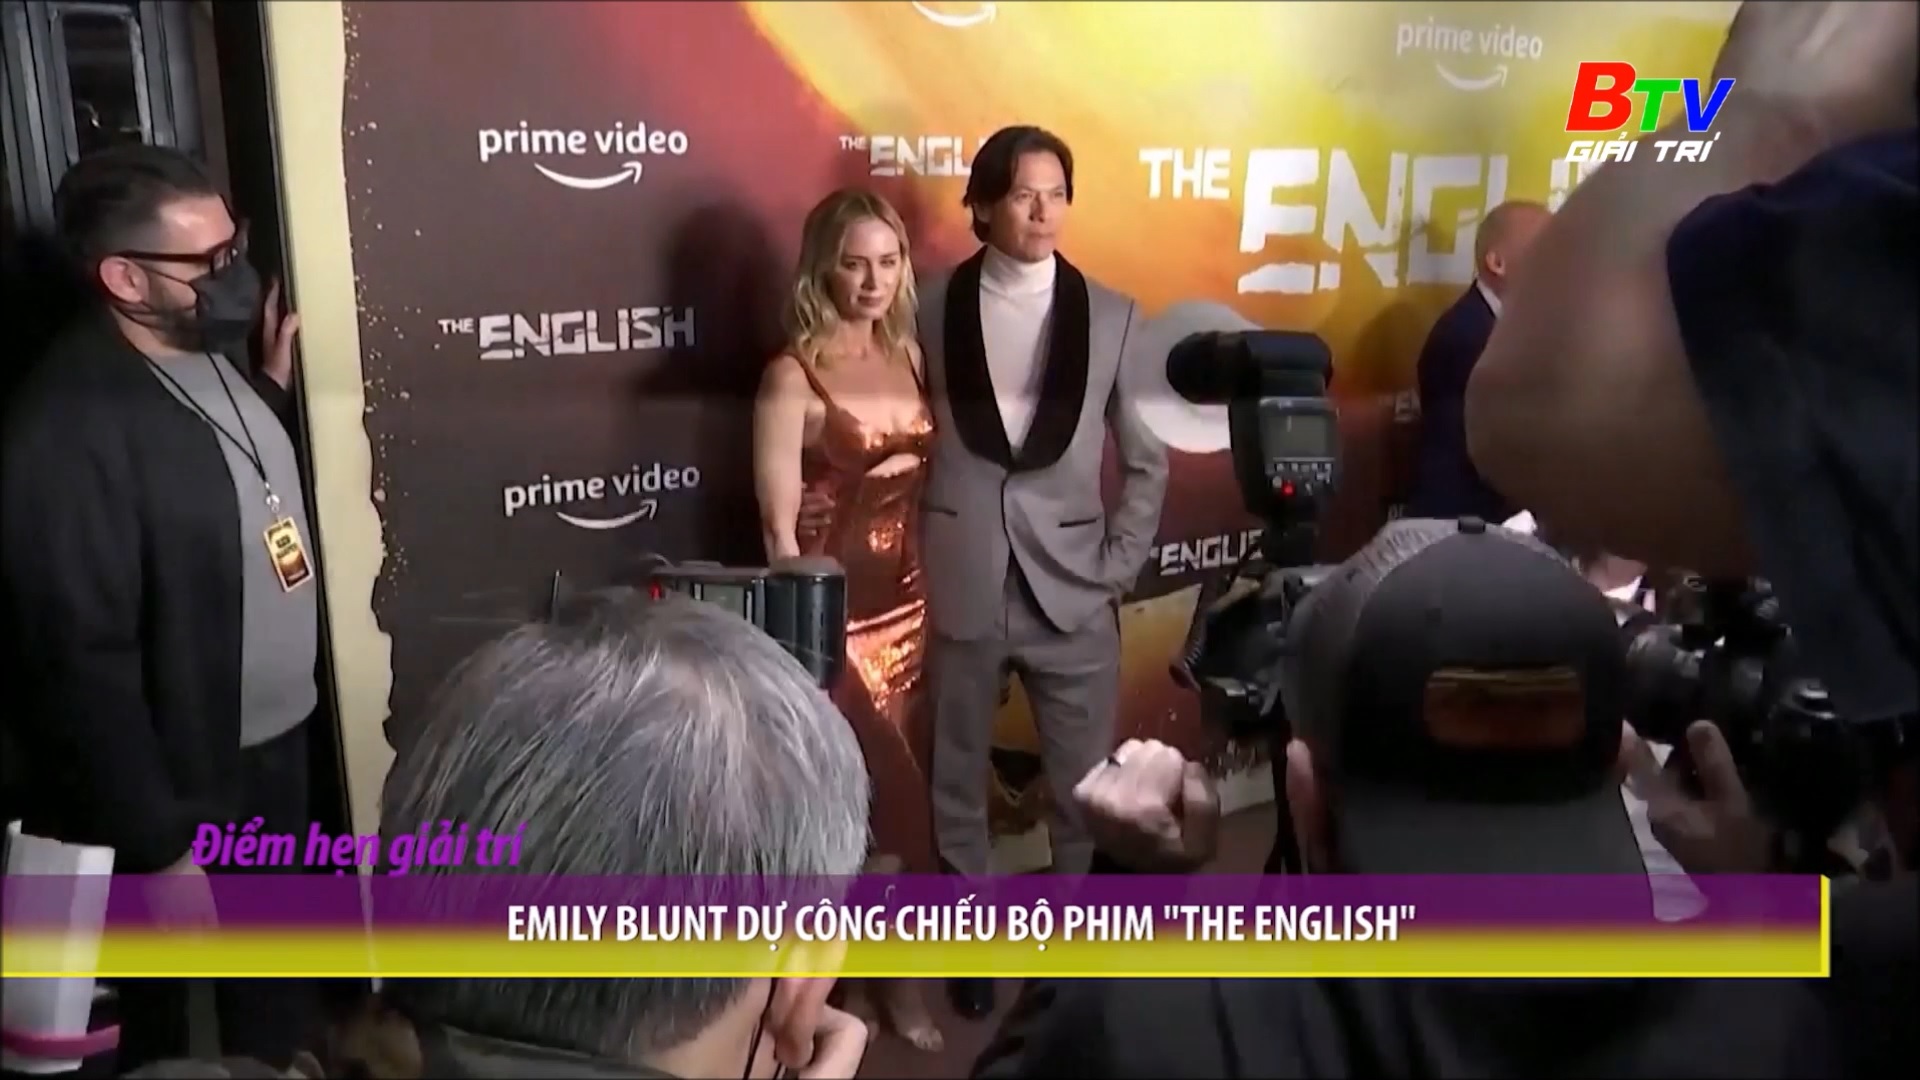 Emily Blunt dự công chiếu bộ phim “The English”